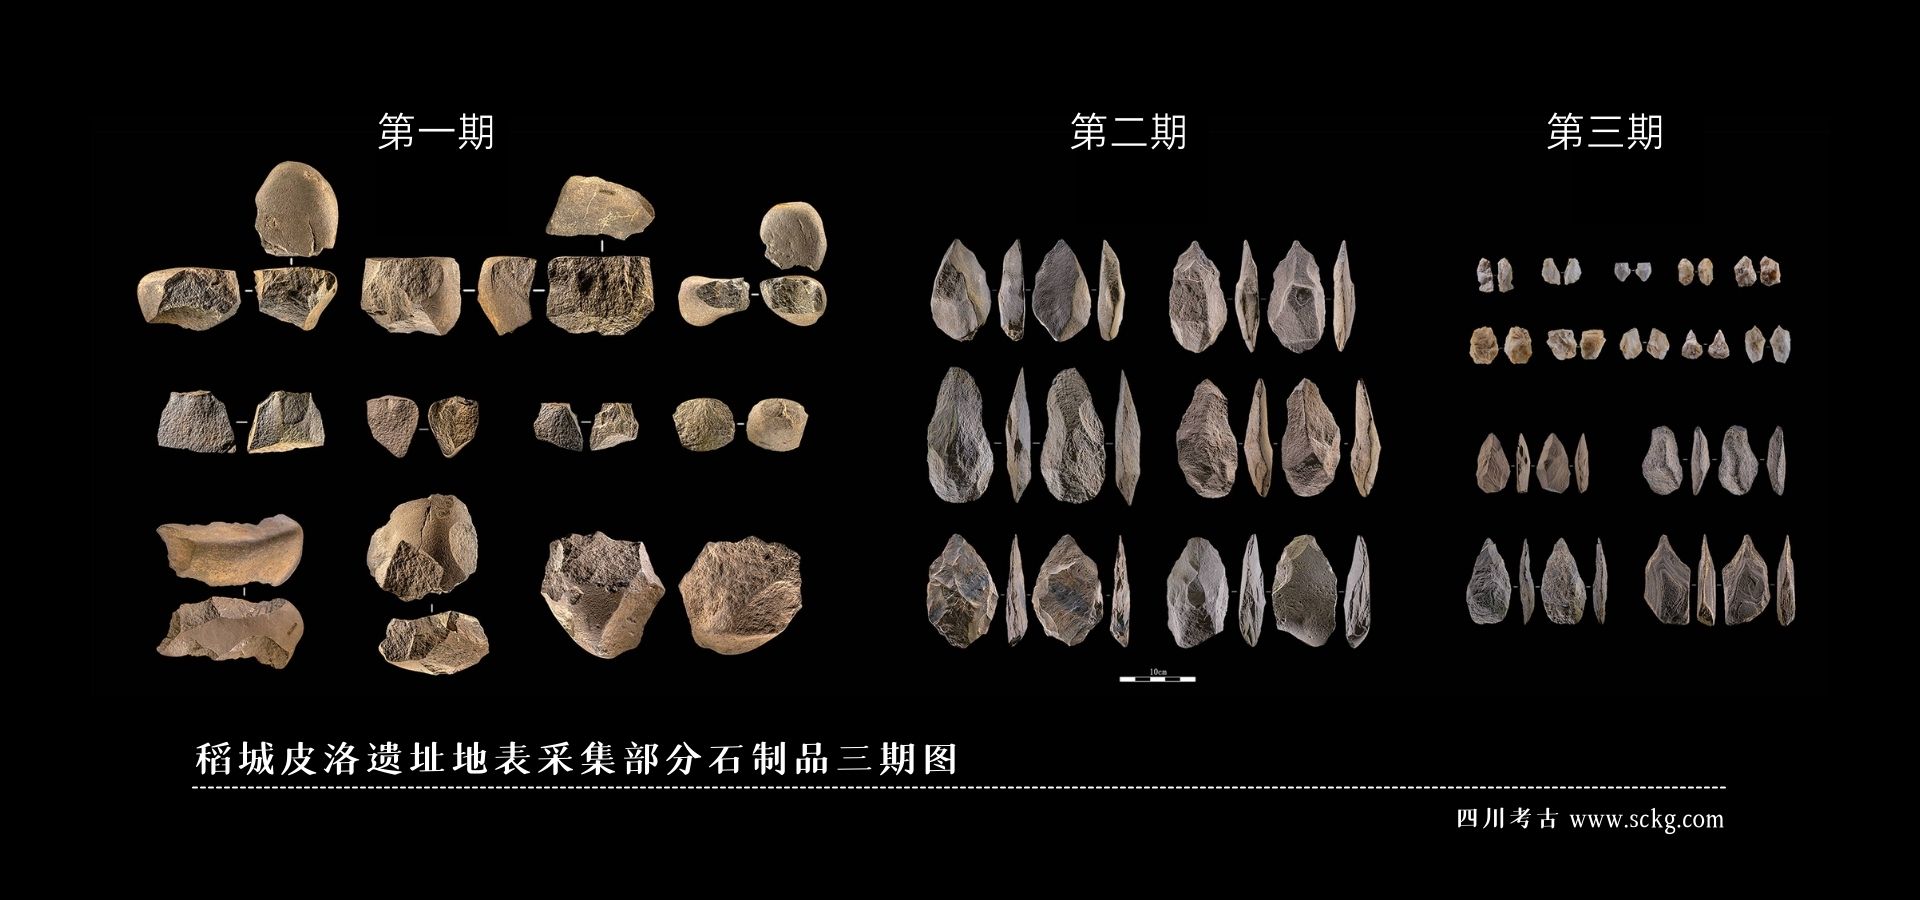 006稻城皮洛遗址地表采集部分石制品三期图.jpg